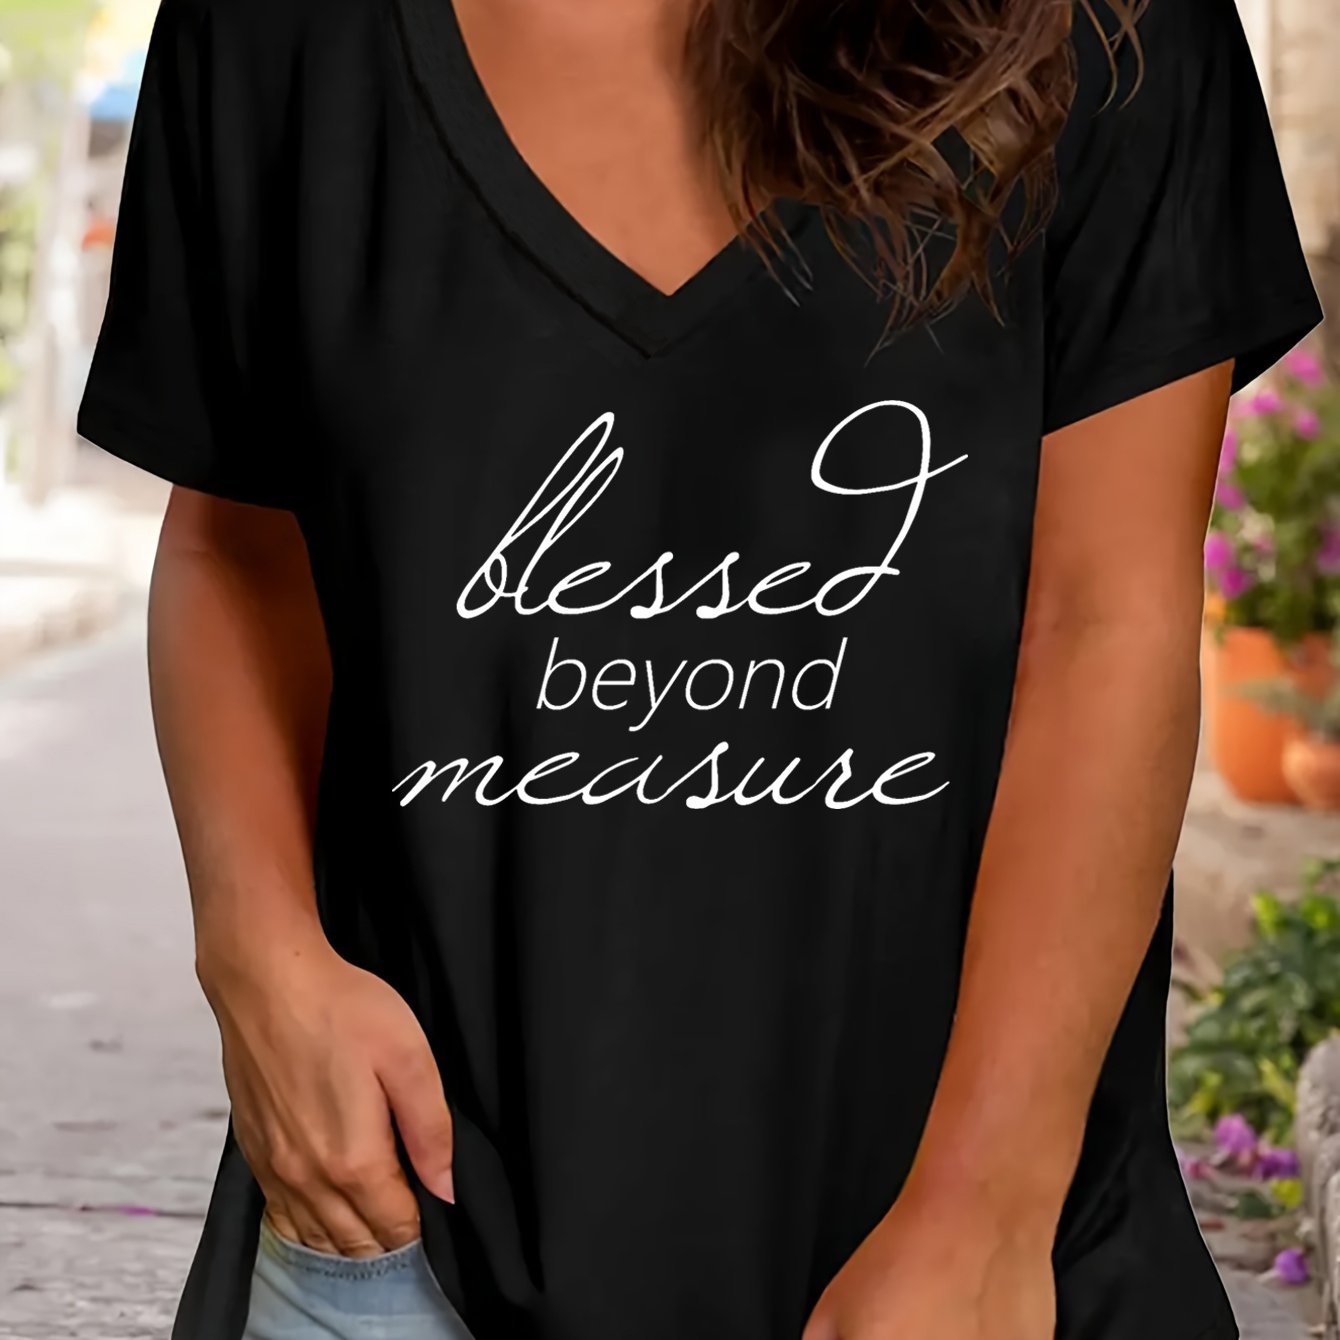 Blessed Beyond Measure Plus Size Women's Christian V Neck T-Shirt claimedbygoddesigns